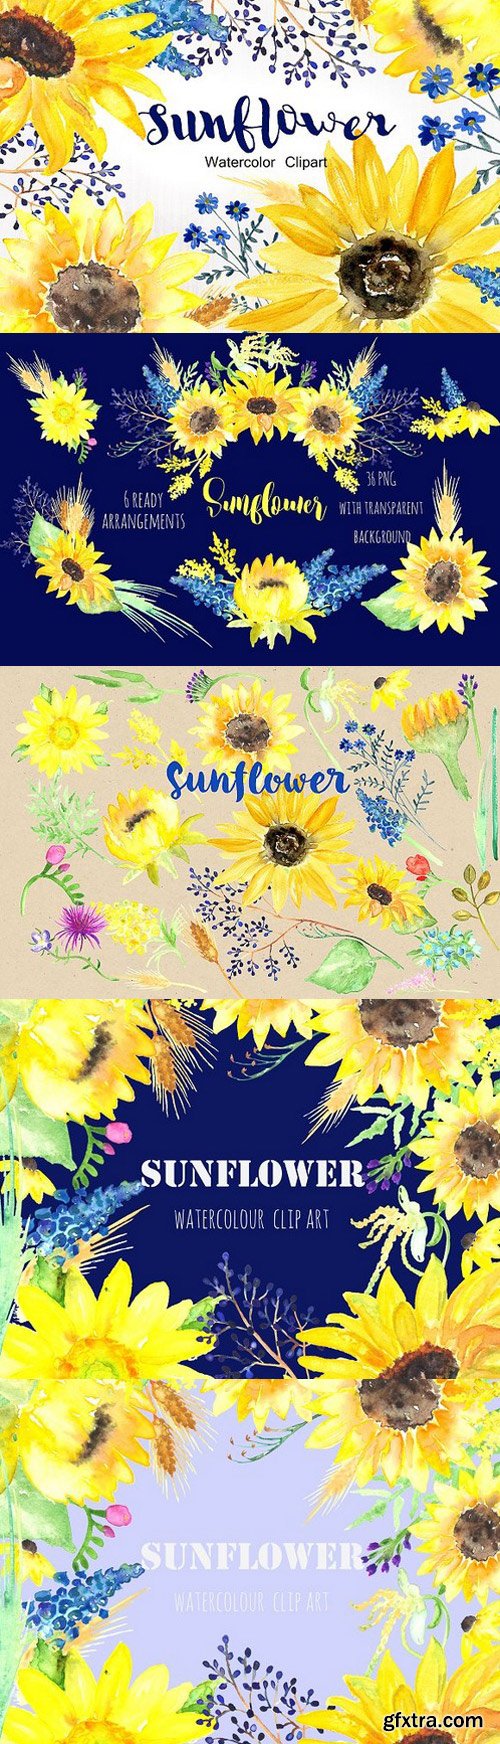 CM - Sunflower Watercolor Clip Art 253219